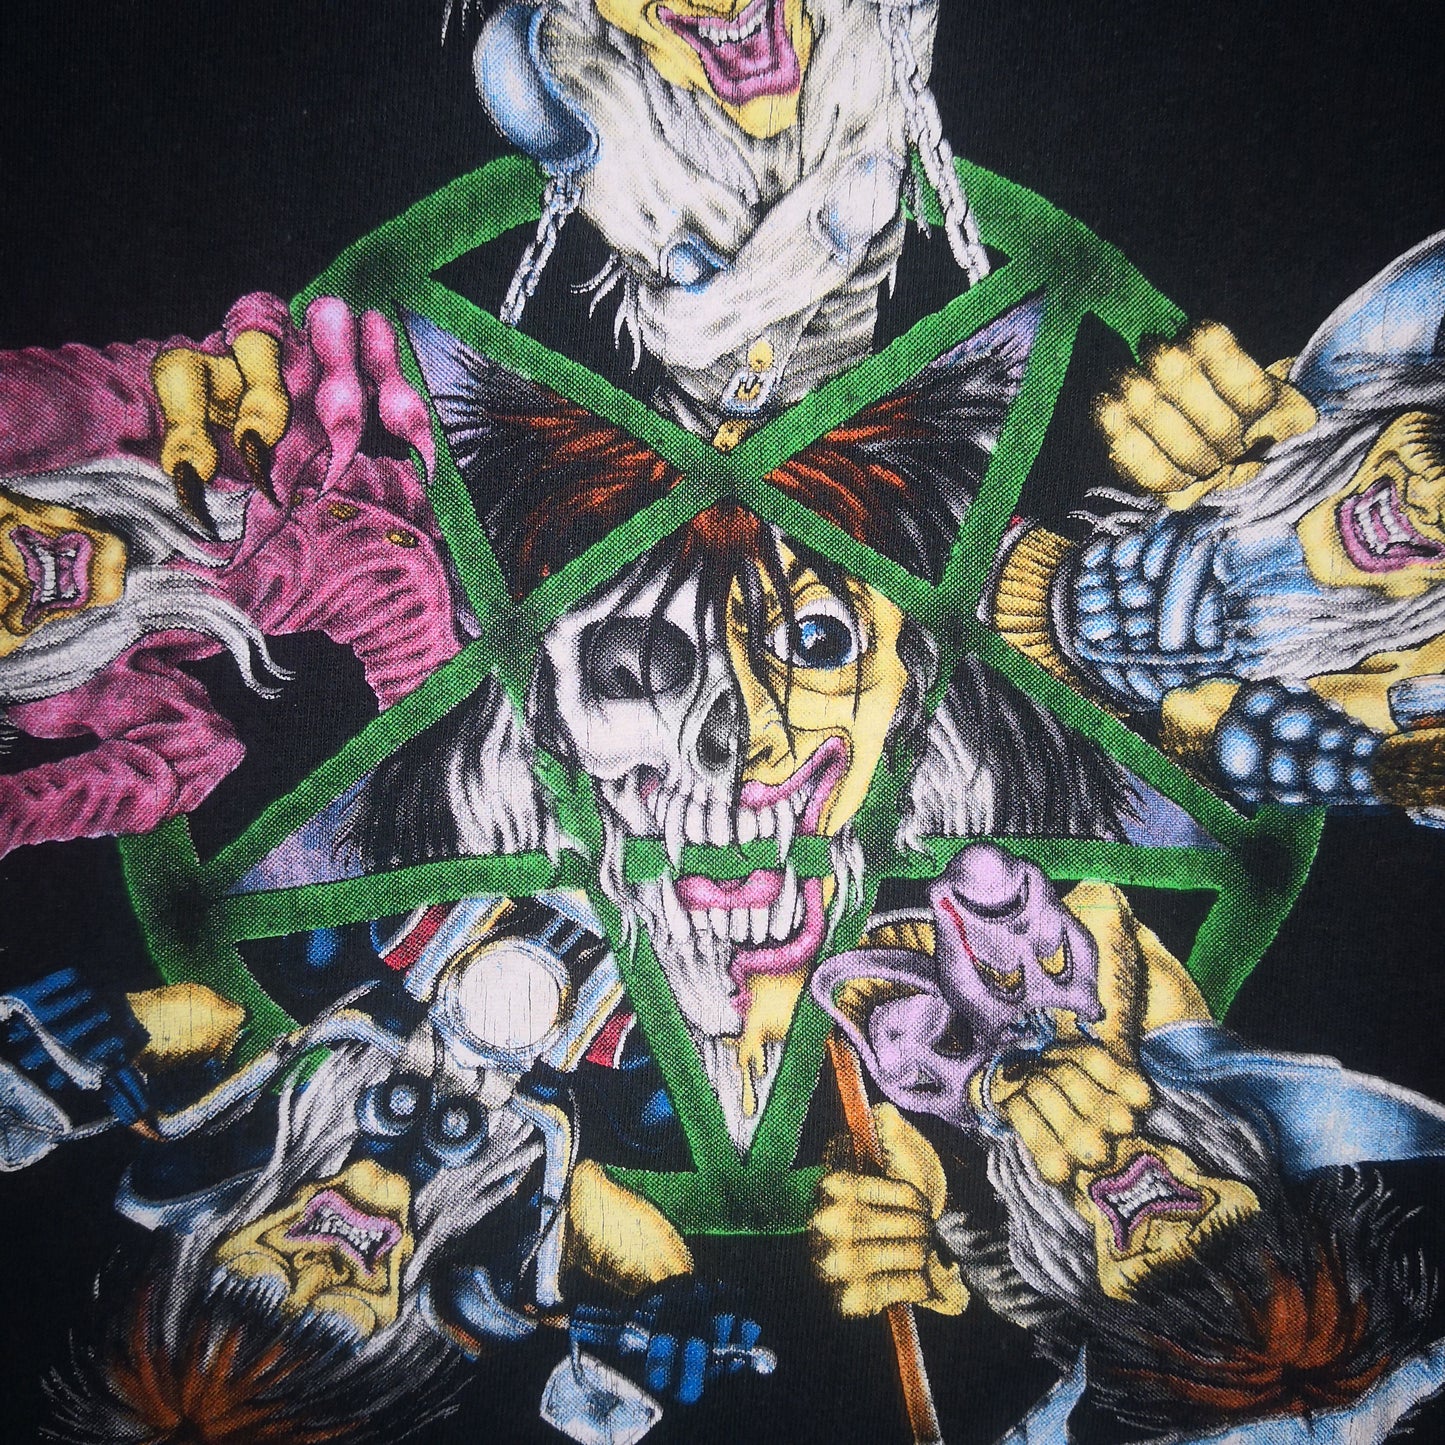 1991 Motley Crue "Pentagram" Shirt - L